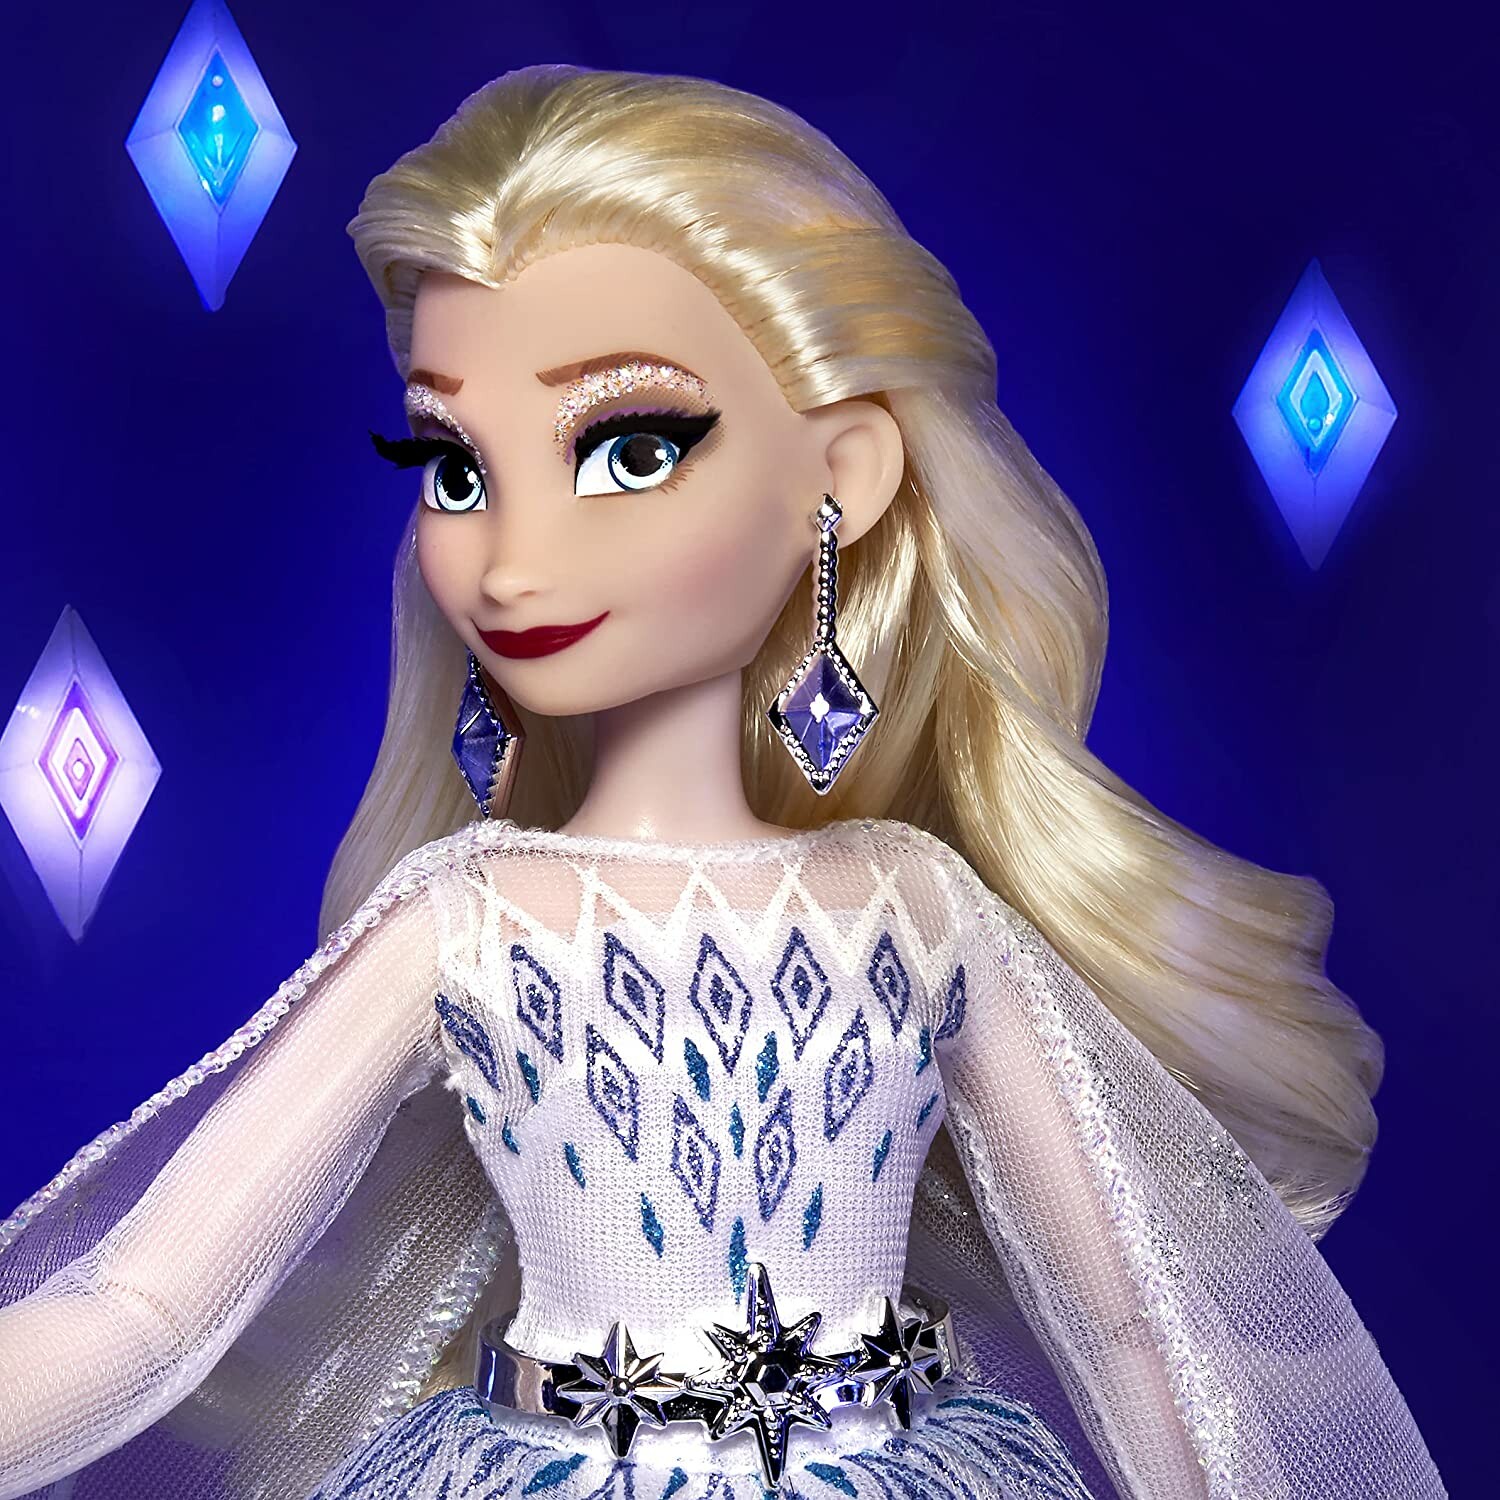 Achat en ligne d'une Poupée Elsa La reine des Neiges 2